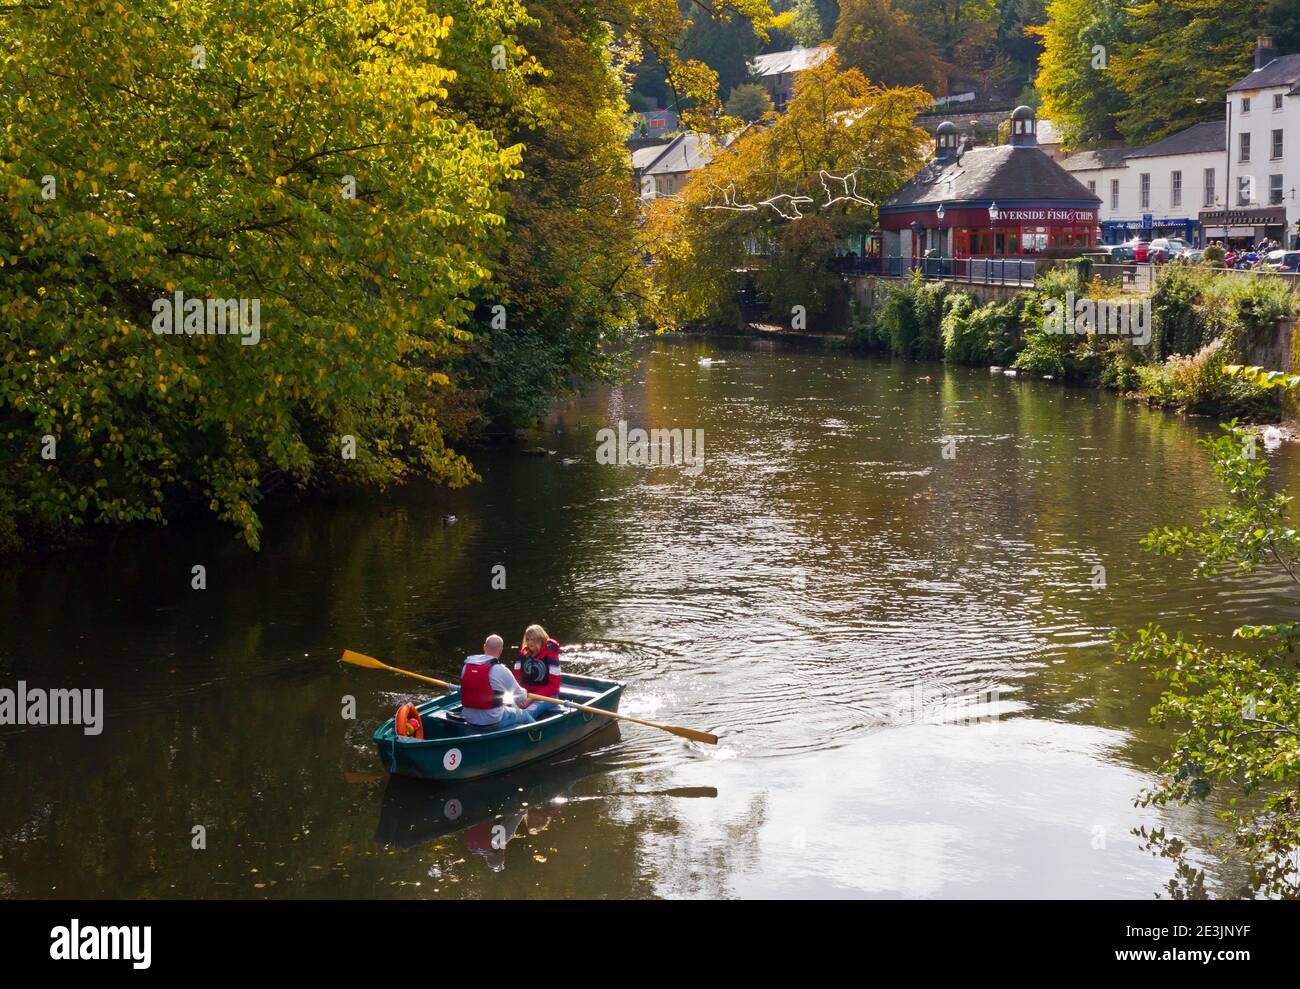 Herbstansicht eines Paares in einem Ruderboot auf dem River Derwent in Matlock Bath ein Dorf in der Derbyshire Dales Gebiet des Peak District England Großbritannien Stockfoto